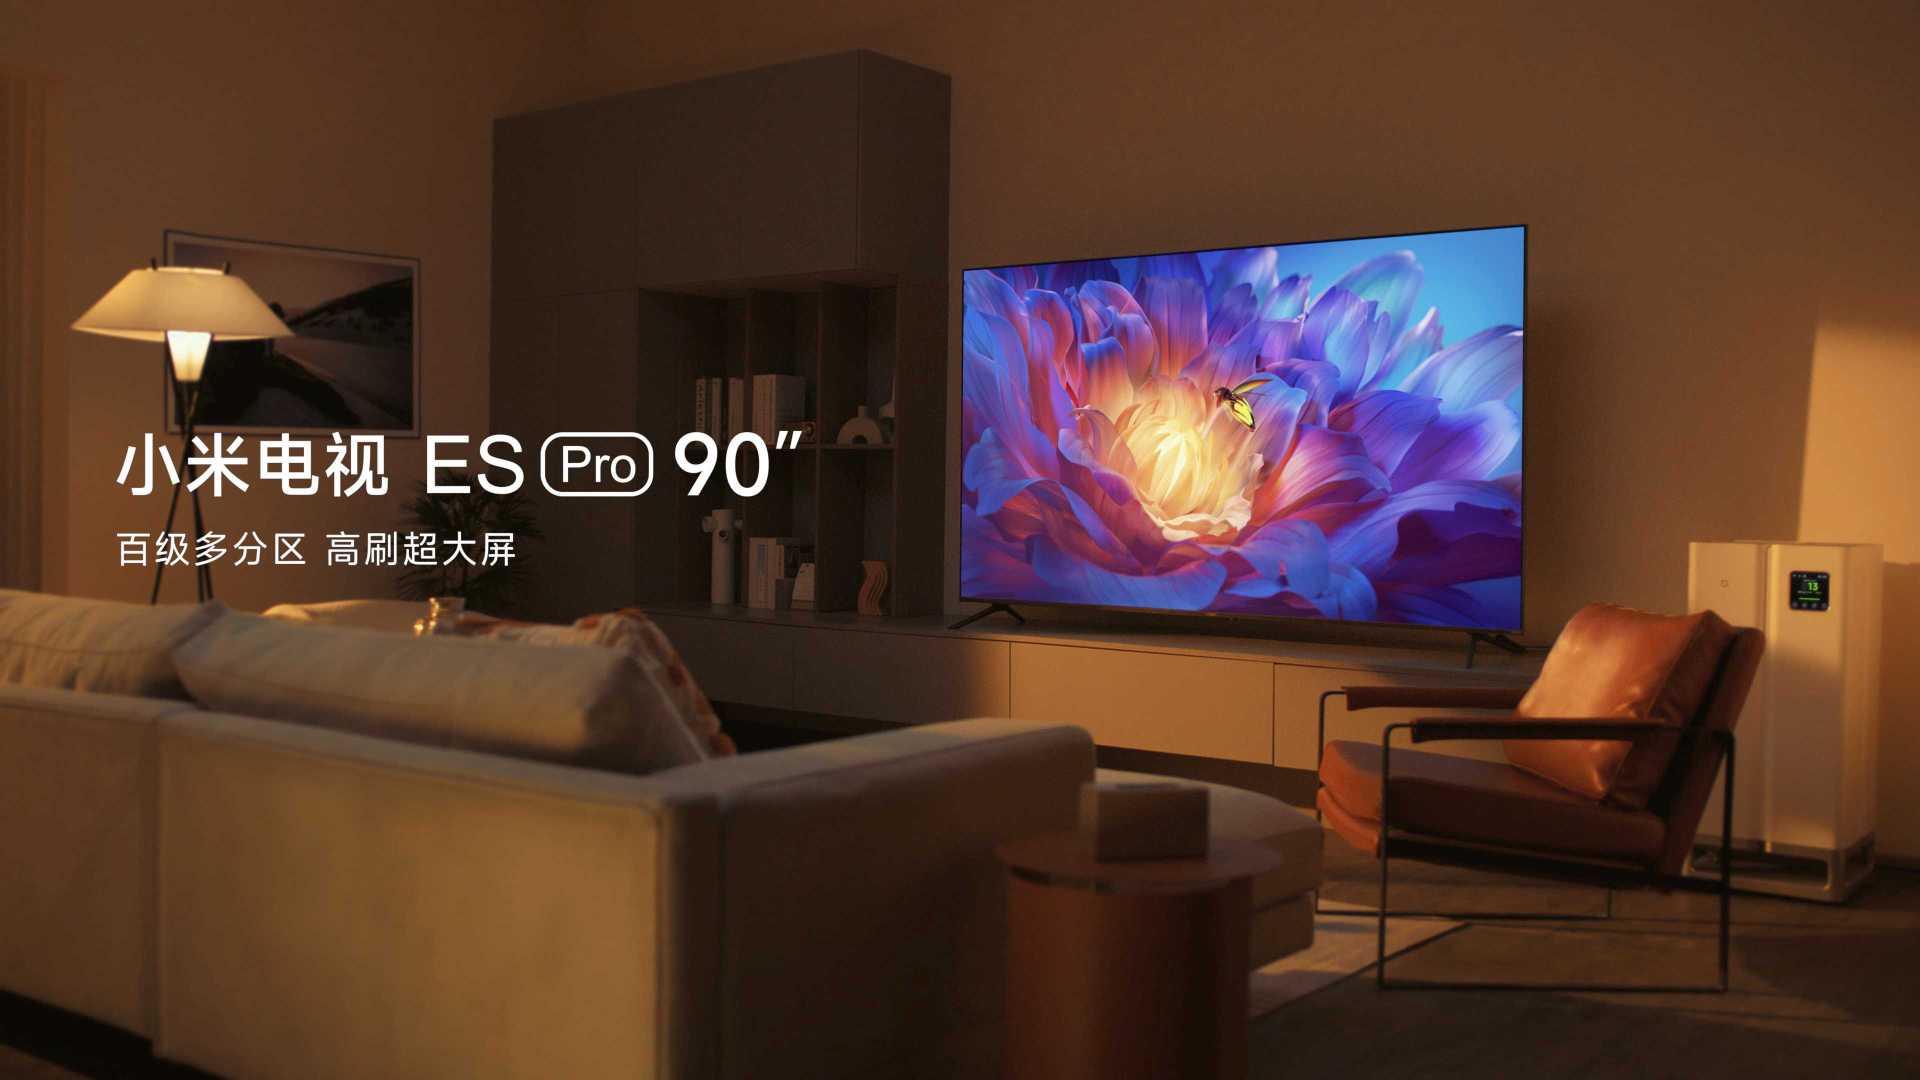 「小米电视ES Pro  90"」新品TVC